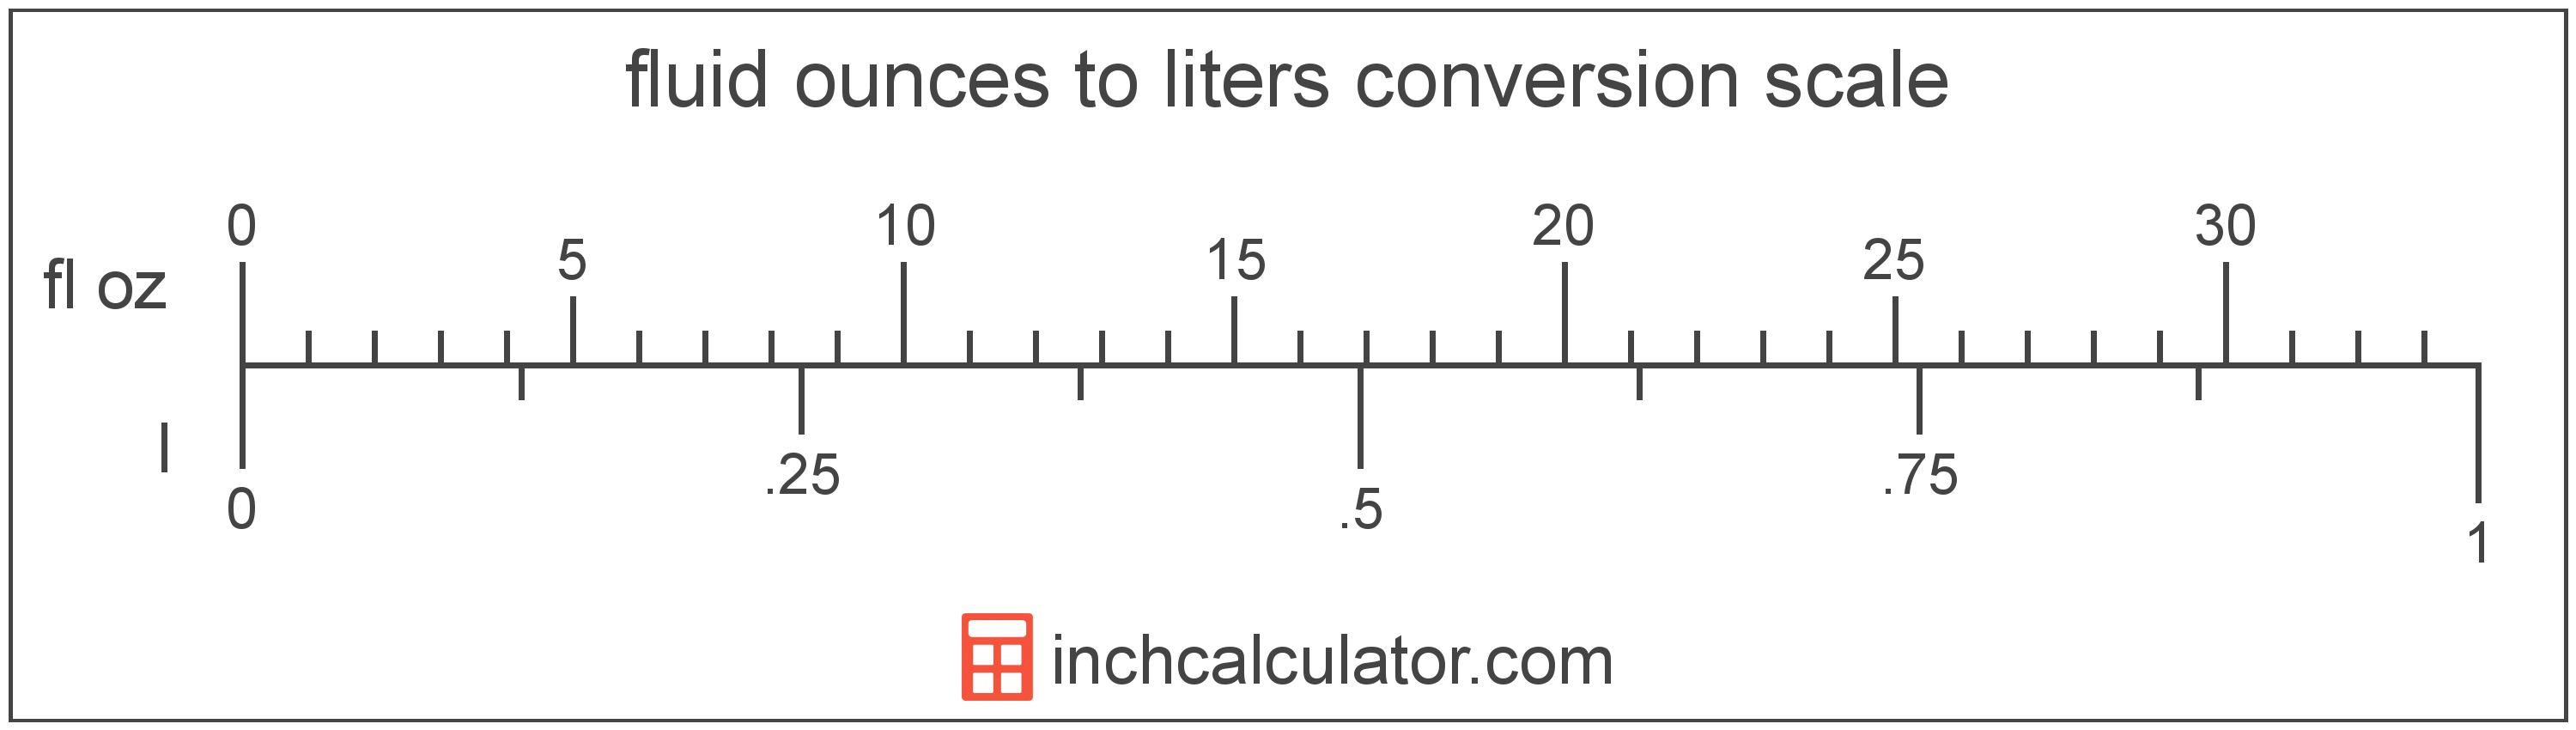 convert-fluid-ounces-to-liters-fl-oz-to-l